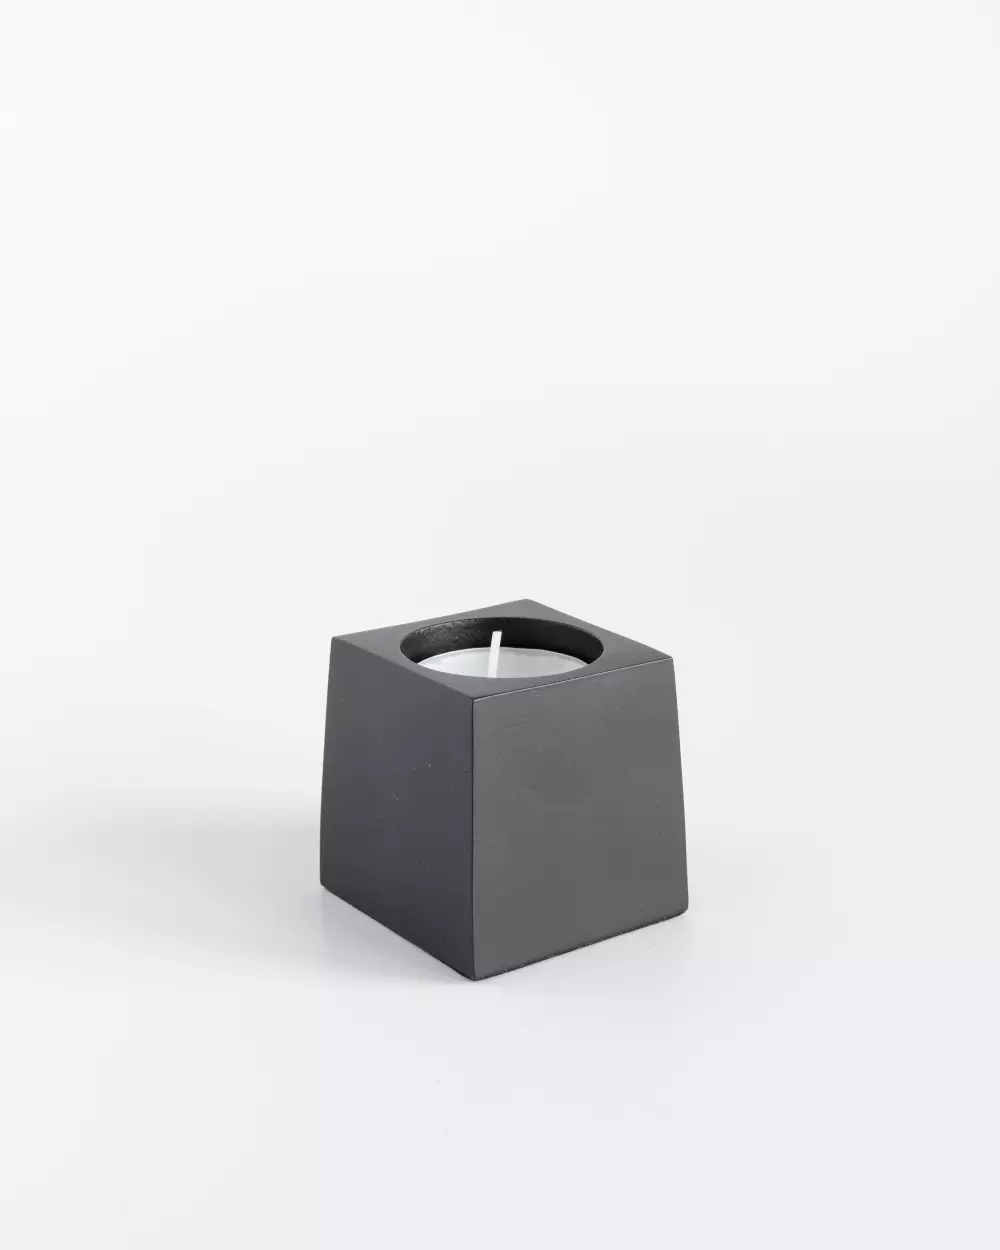 Cube T-lysholder 5cm Sort, 7072347190075, 19007, Interiør, Telysholdere, Coming Home, Cube t-lysholder 5x5x6cm sort